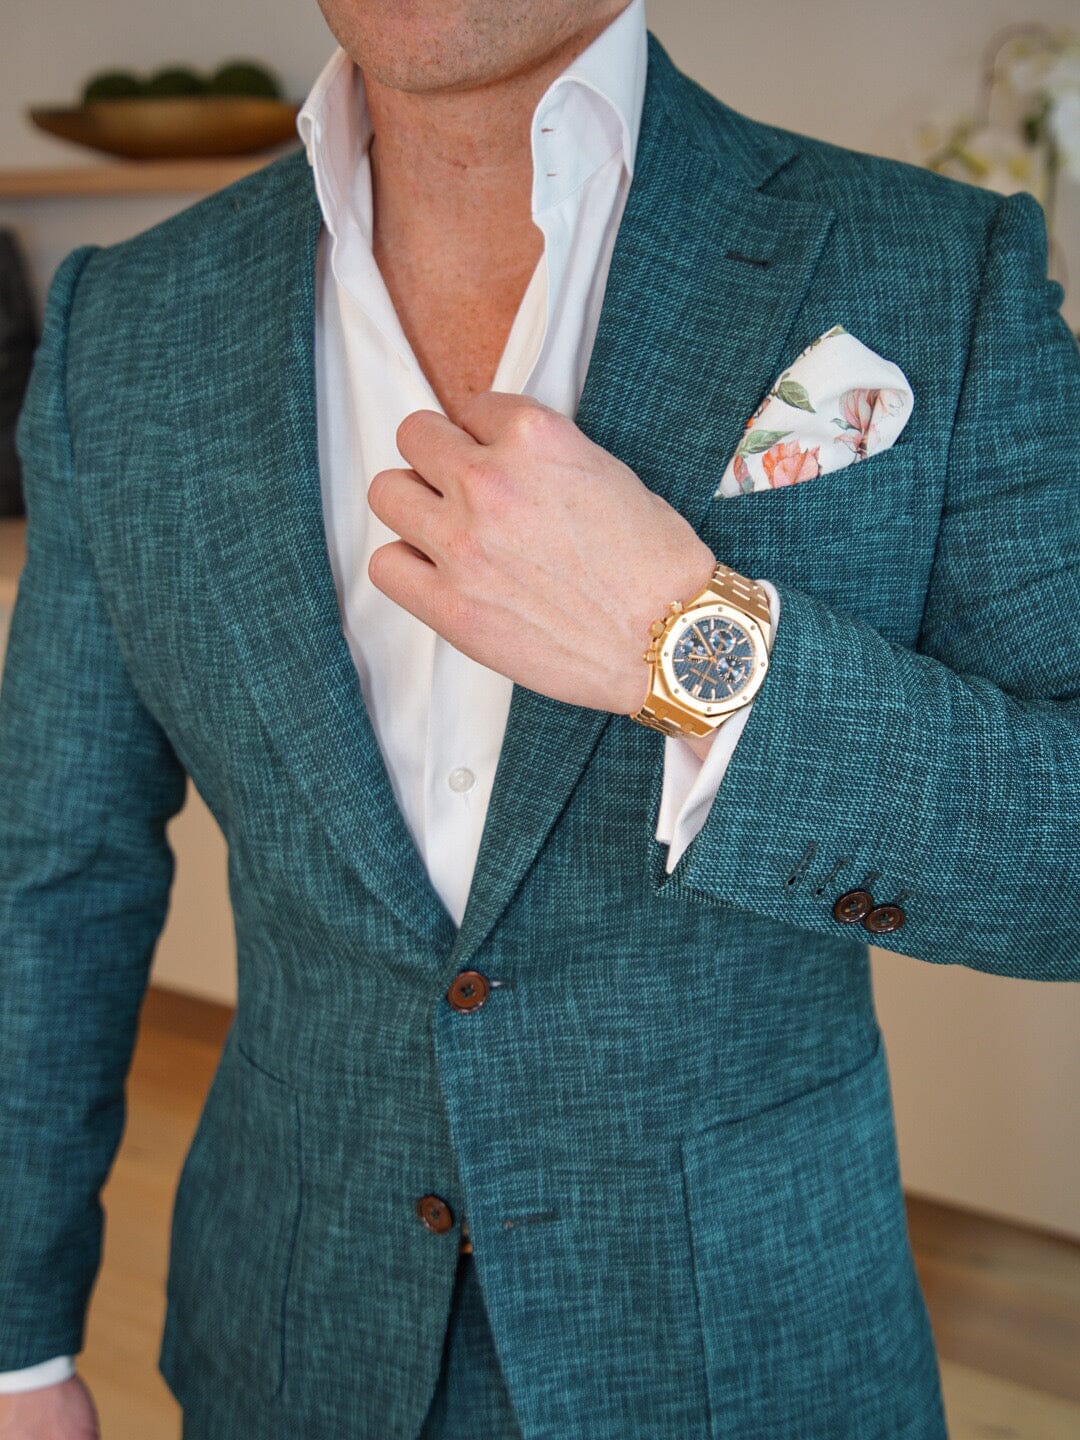 Evergreen Lino Tweed Jacket